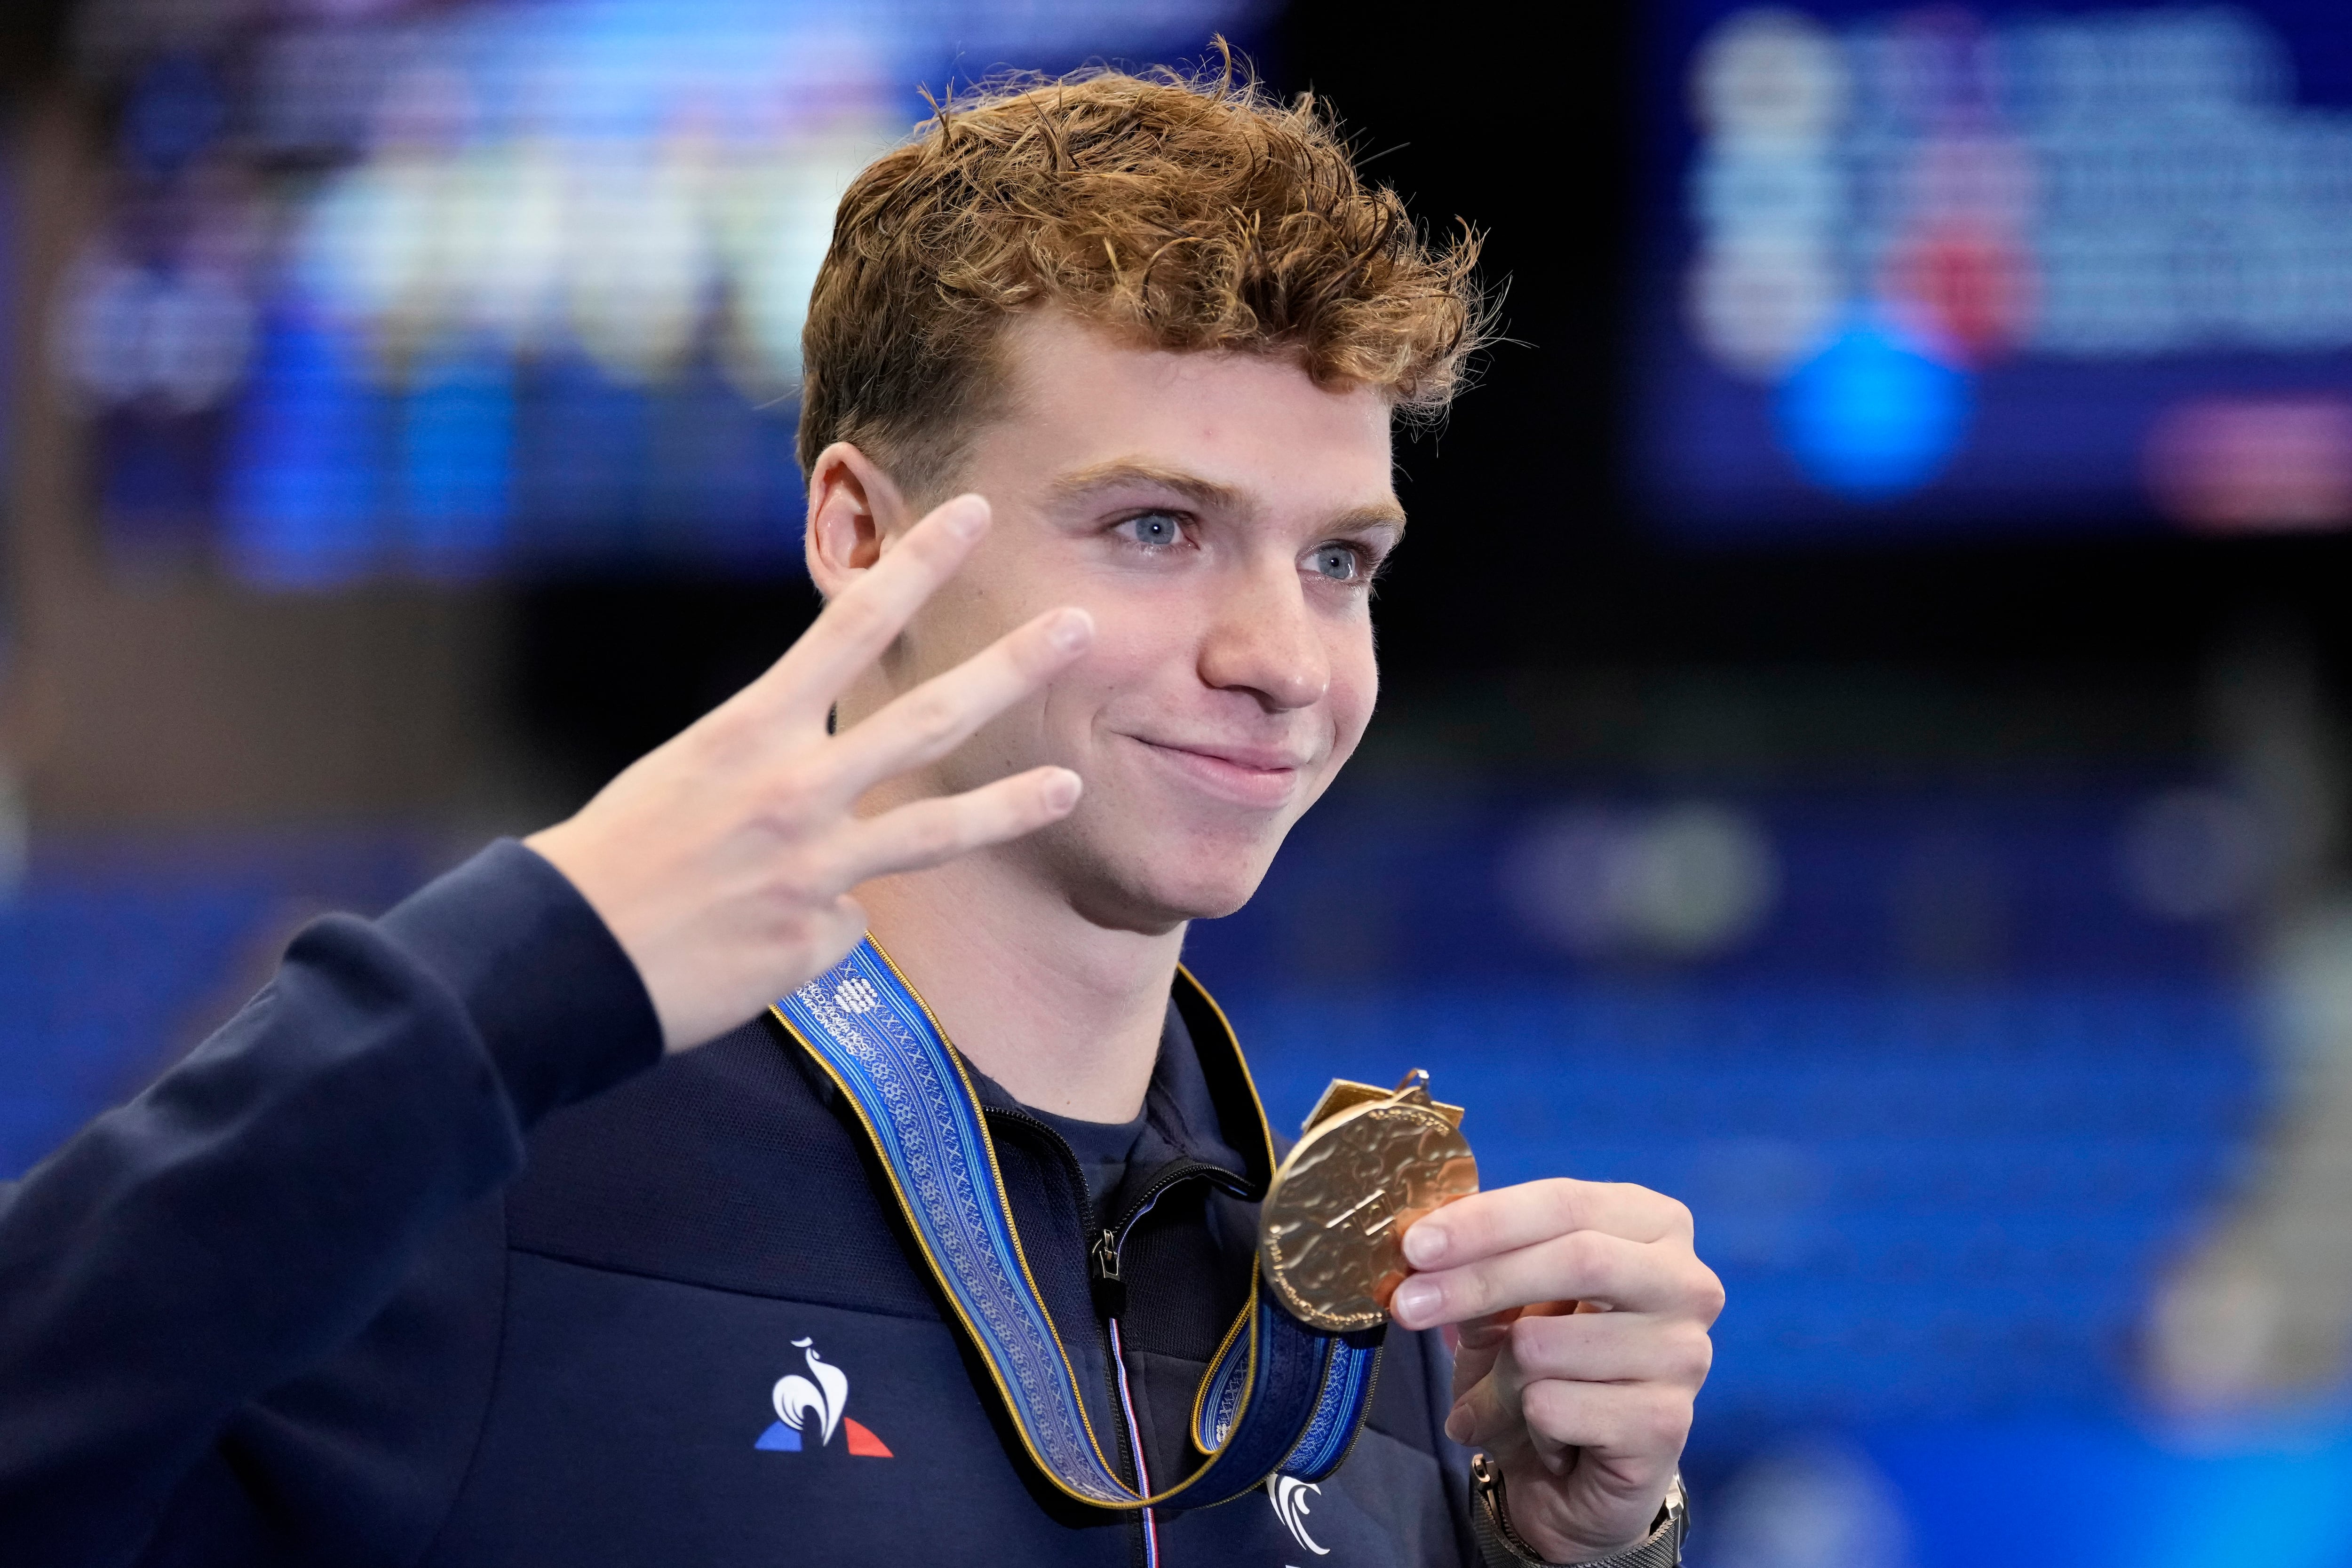 El francés Leon Marchand tras ganar la medalla de oro en los 200 metros combinados en el Mundial de natación, el jueves 27 de julio de 2023. (AP Foto/Lee Jin-man)